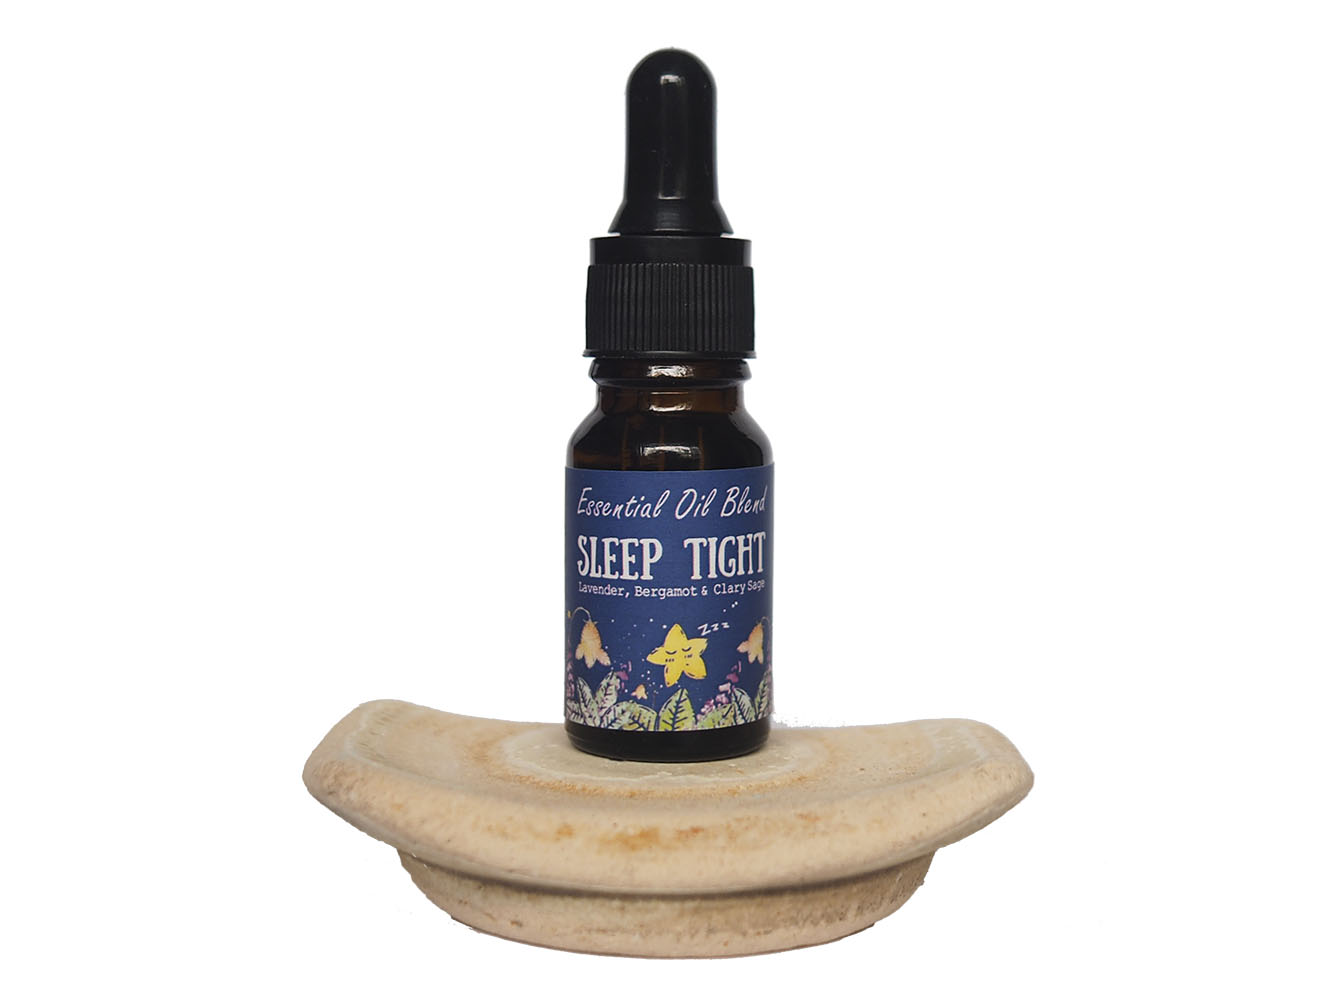 Sleep Tight Aromatherapy oil blend Blue Moon Saigon